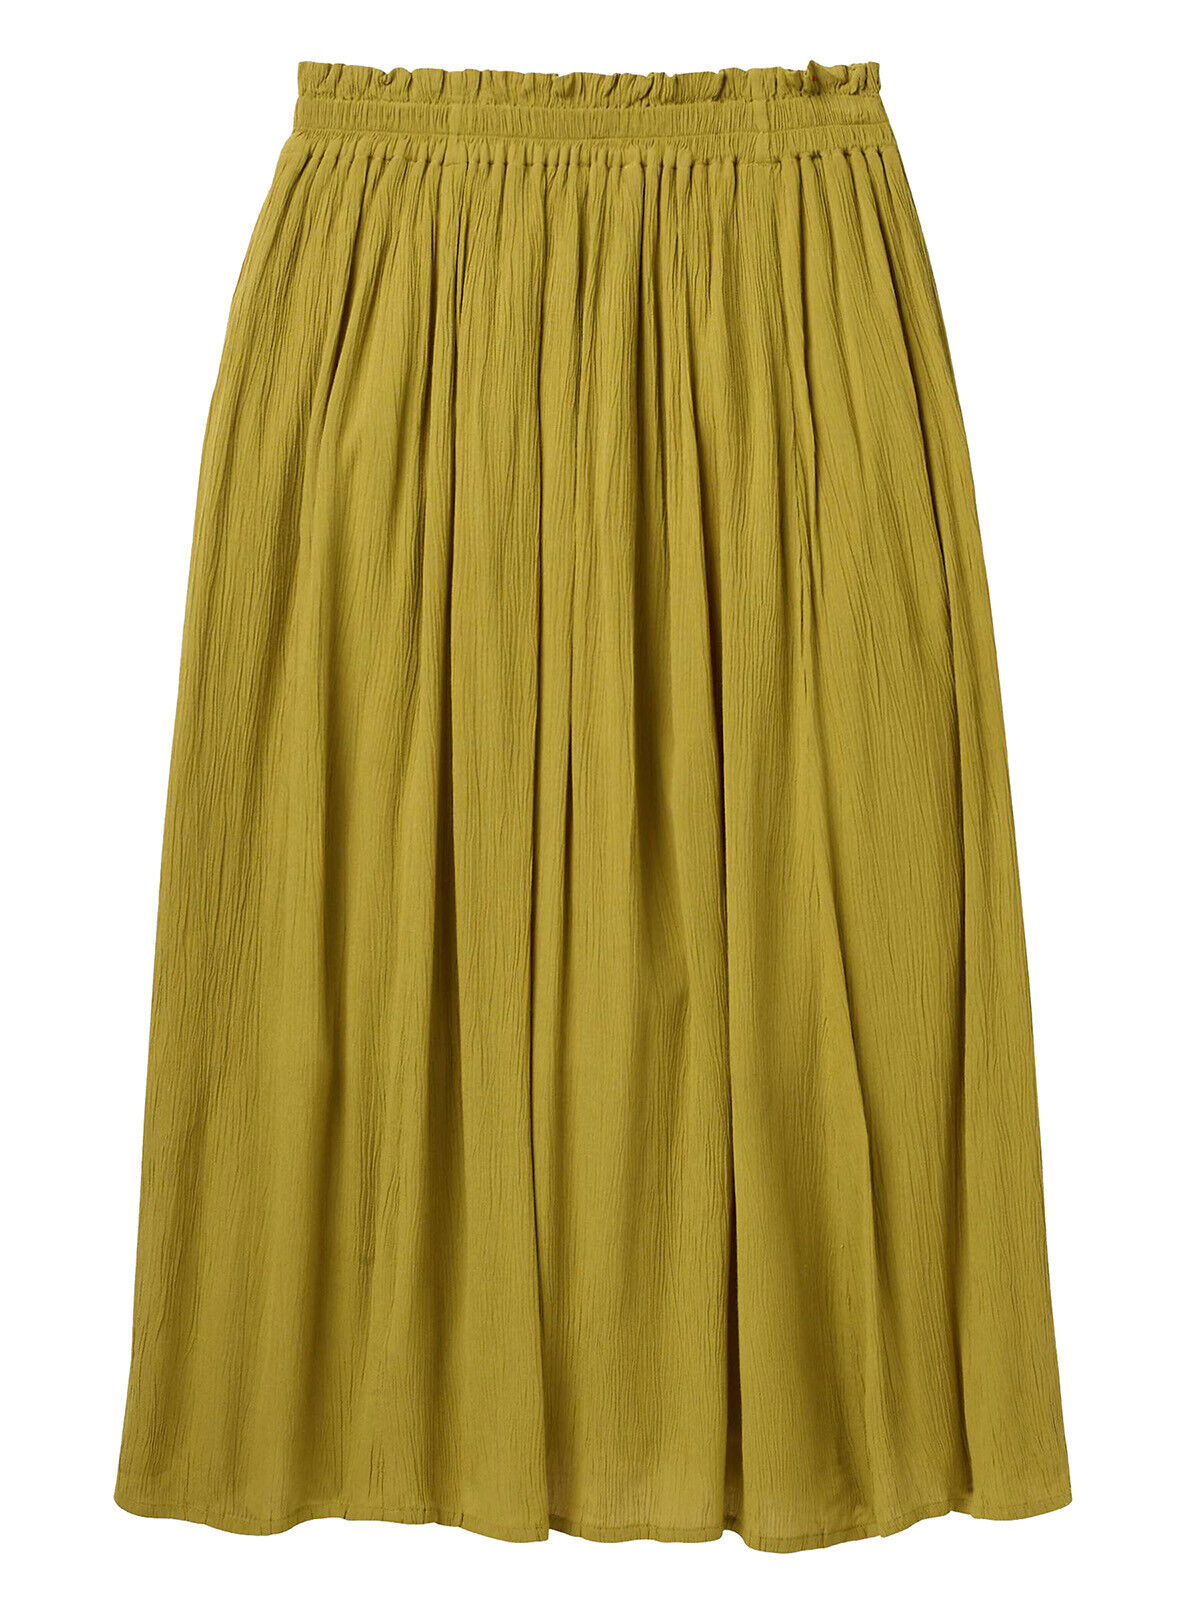 EX WHITE STUFF Green Sorrel Crinkle Midi Skirt in Sizes 12 or 18 RRP £45